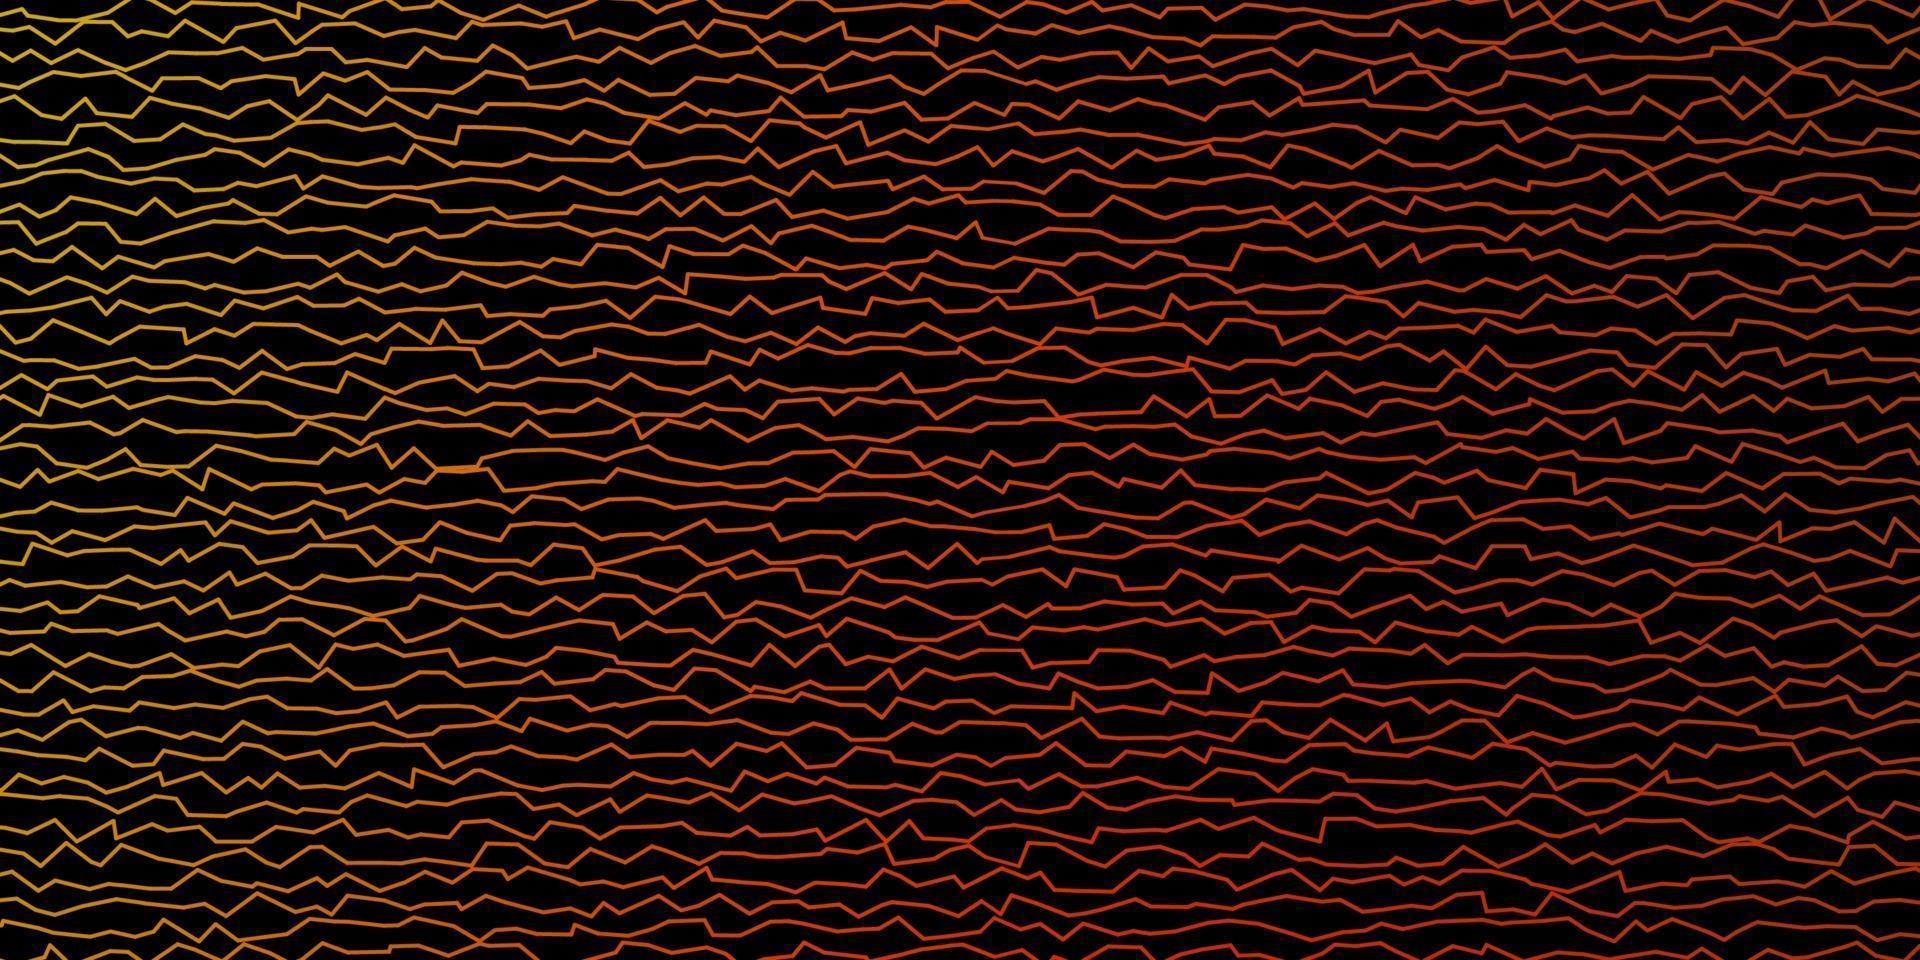 padrão de vetor laranja escuro com linhas.